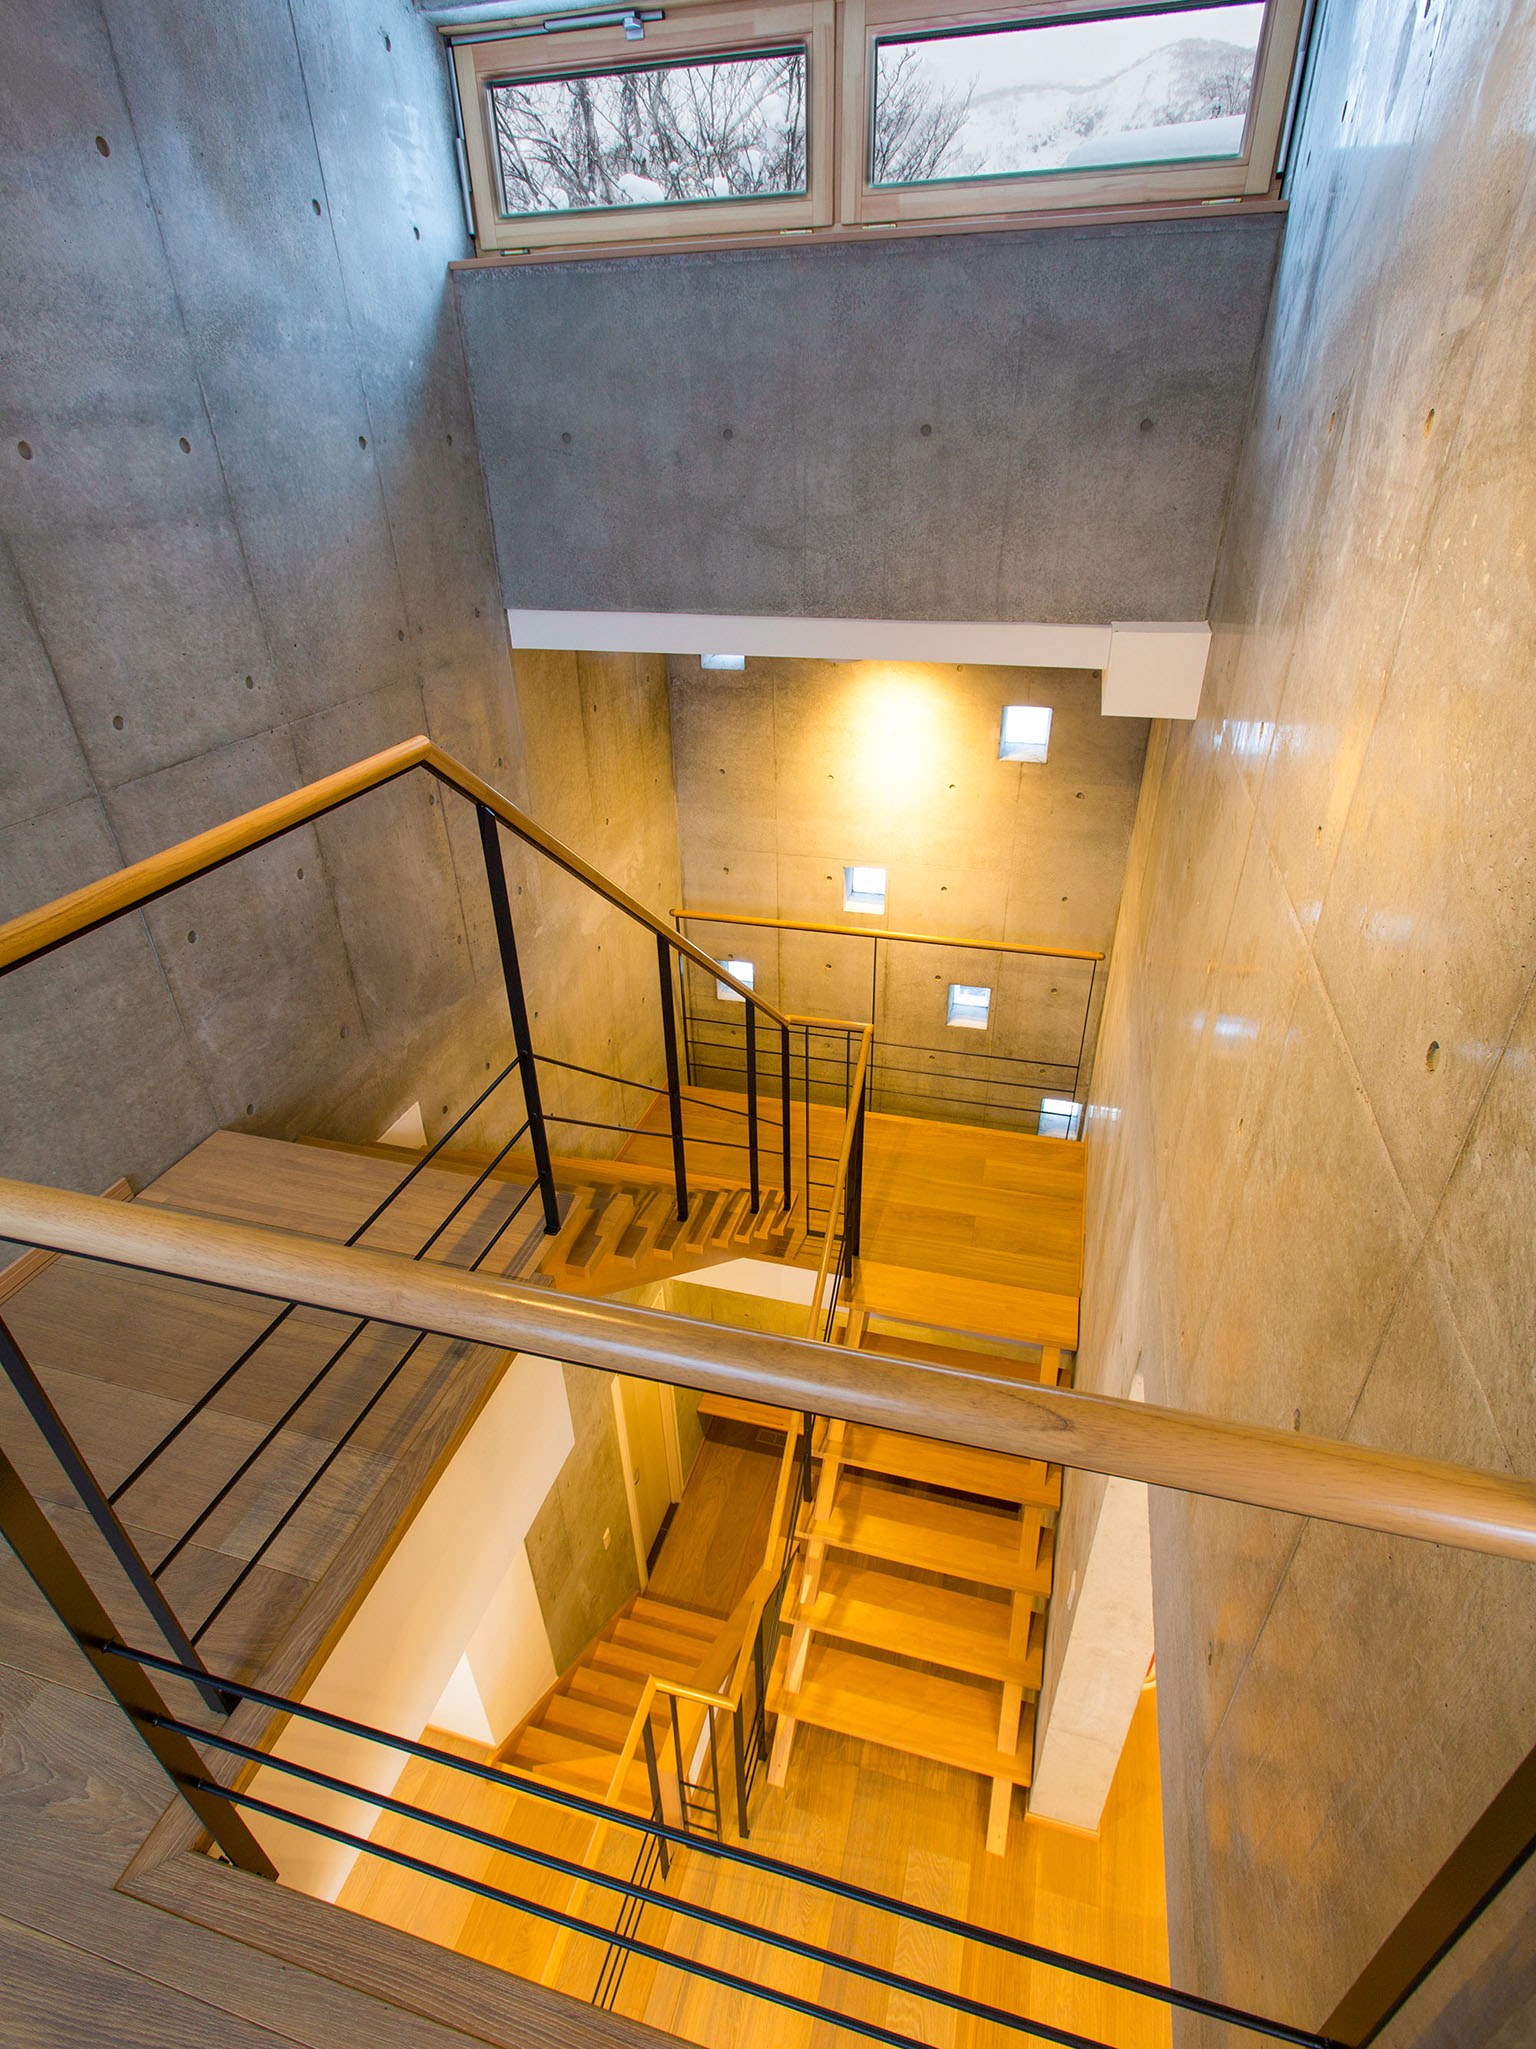 Mizunara - Modern stairways design